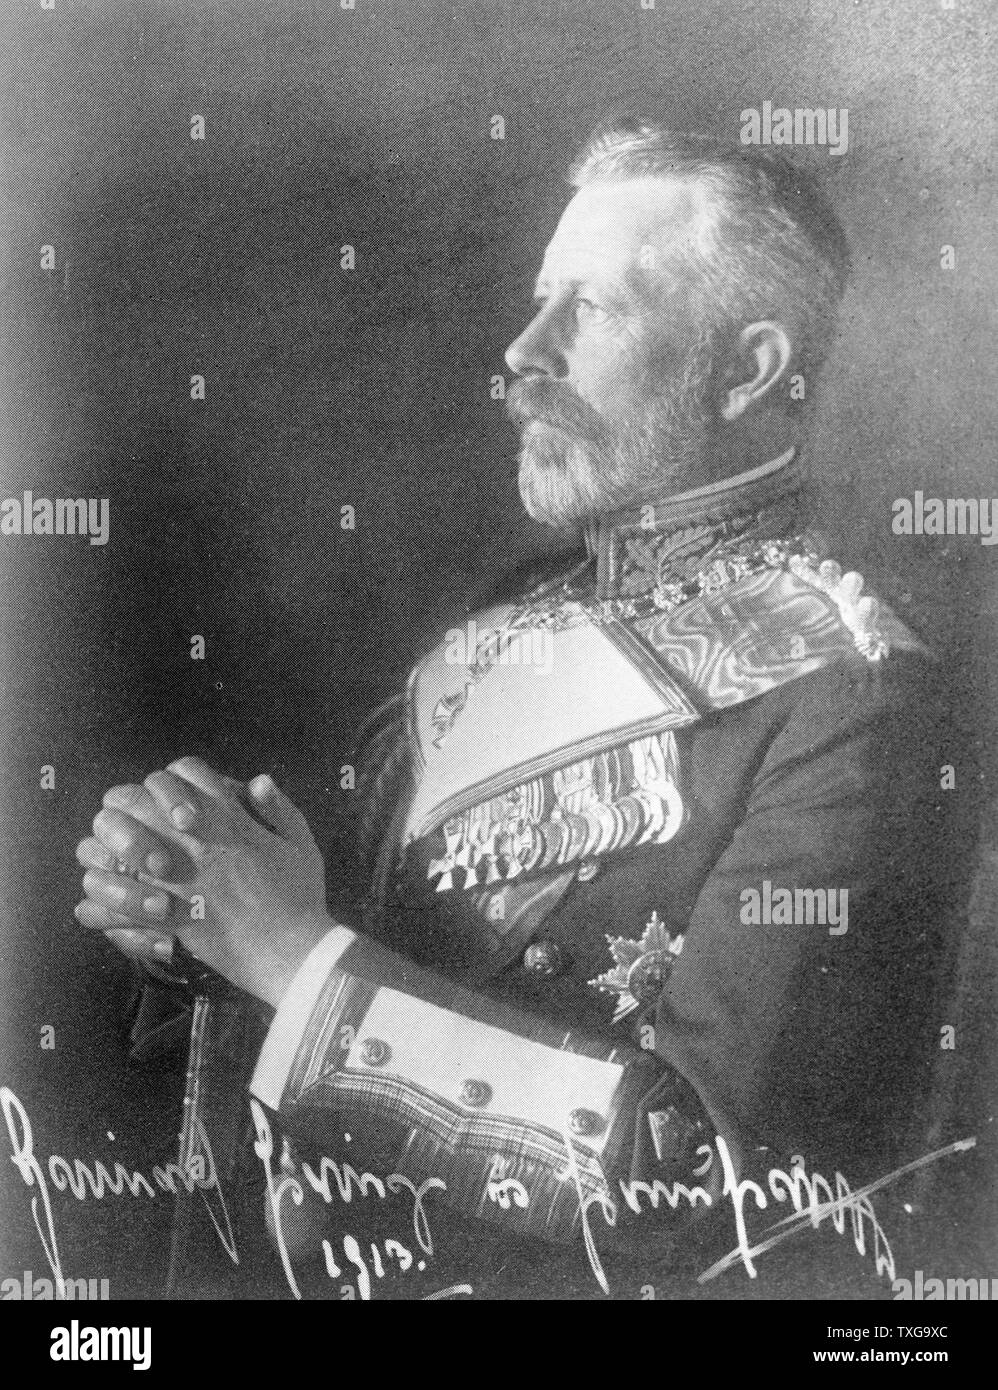 Príncipe Heinrich de Prusia, 1913. Un hermano menor de Guillermo II, un funcionario de carrera en la Marina Imperial de Alemania, elevado al rango de Gran Almirante. Retrato de perfil, vistiendo uniforme, órdenes y condecoraciones. Foto de stock